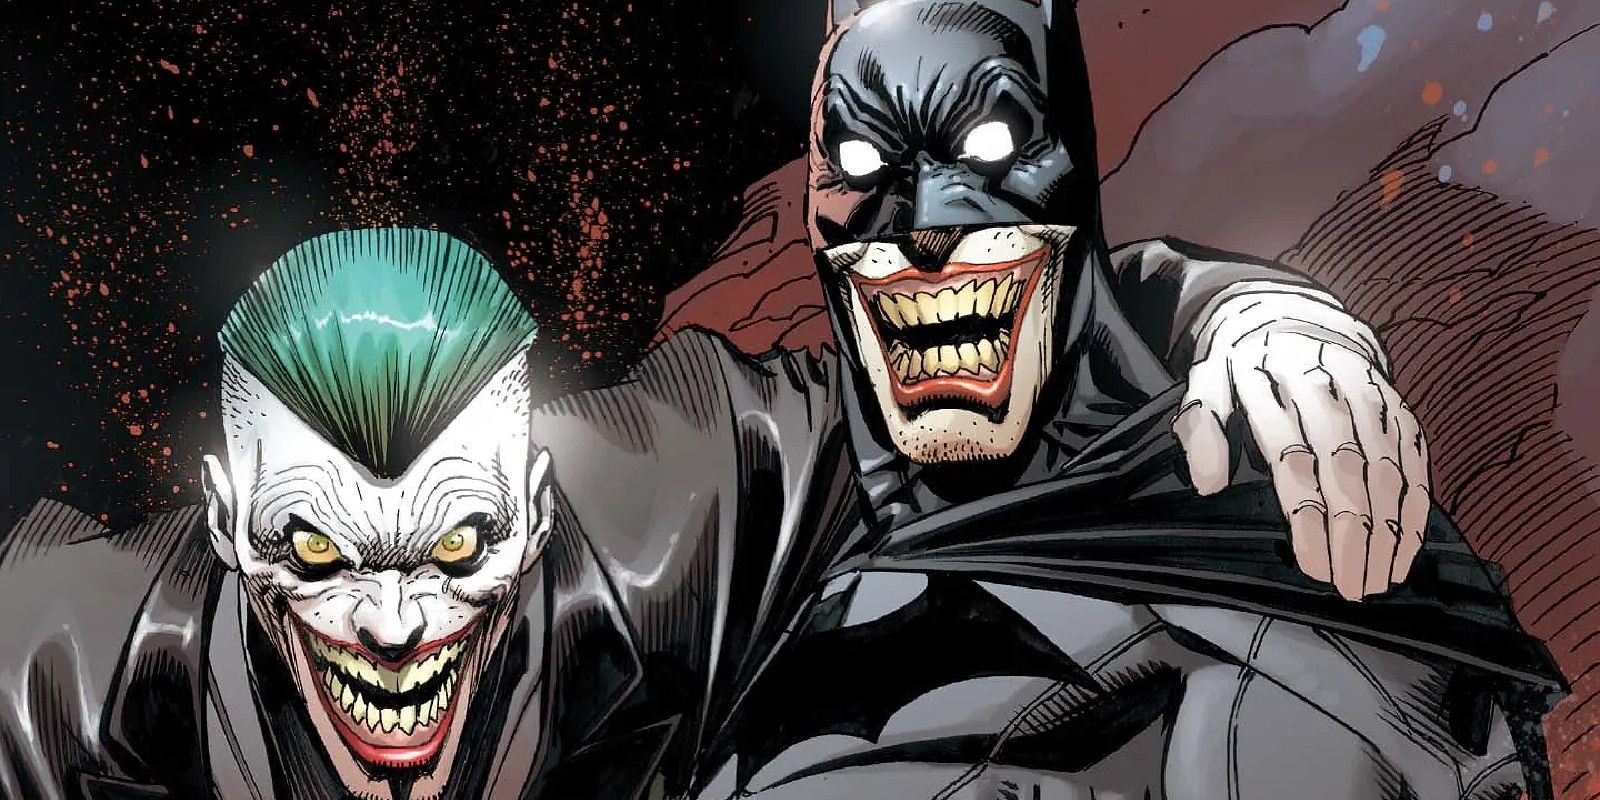 "Lo entiendo, simplemente no es gracioso": el chiste favorito de Batman explica por qué el Joker está tan obsesionado con él (de verdad)